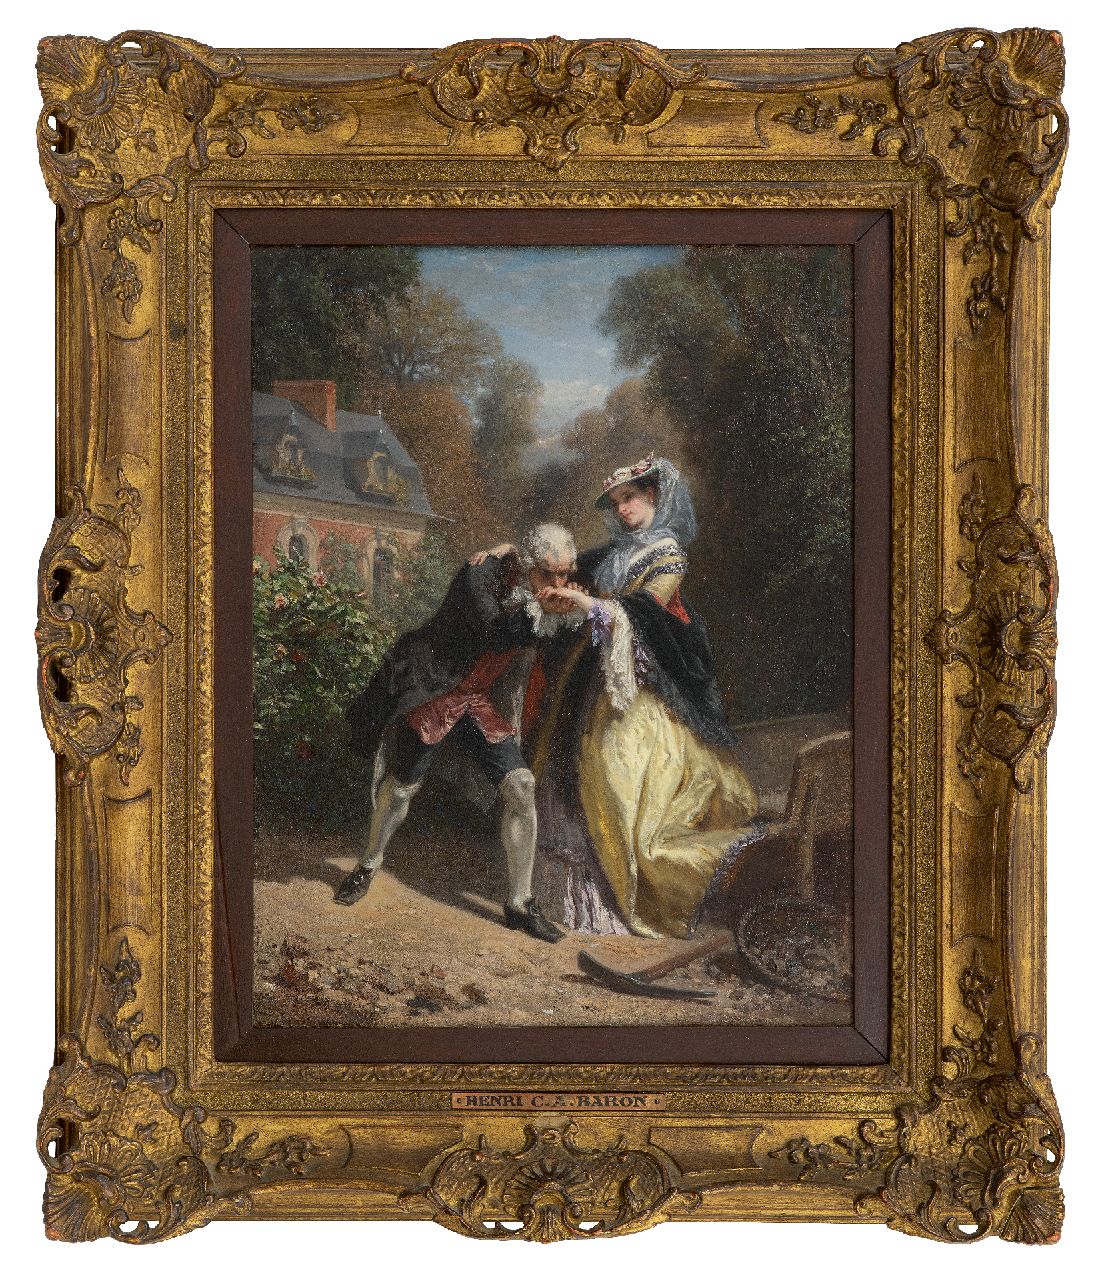 Baron H.C.A.  | 'Henri' Charles Antoine Baron | Schilderijen te koop aangeboden | De handkus, olieverf op paneel 36,2 x 28,3 cm, gesigneerd rechts van het midden